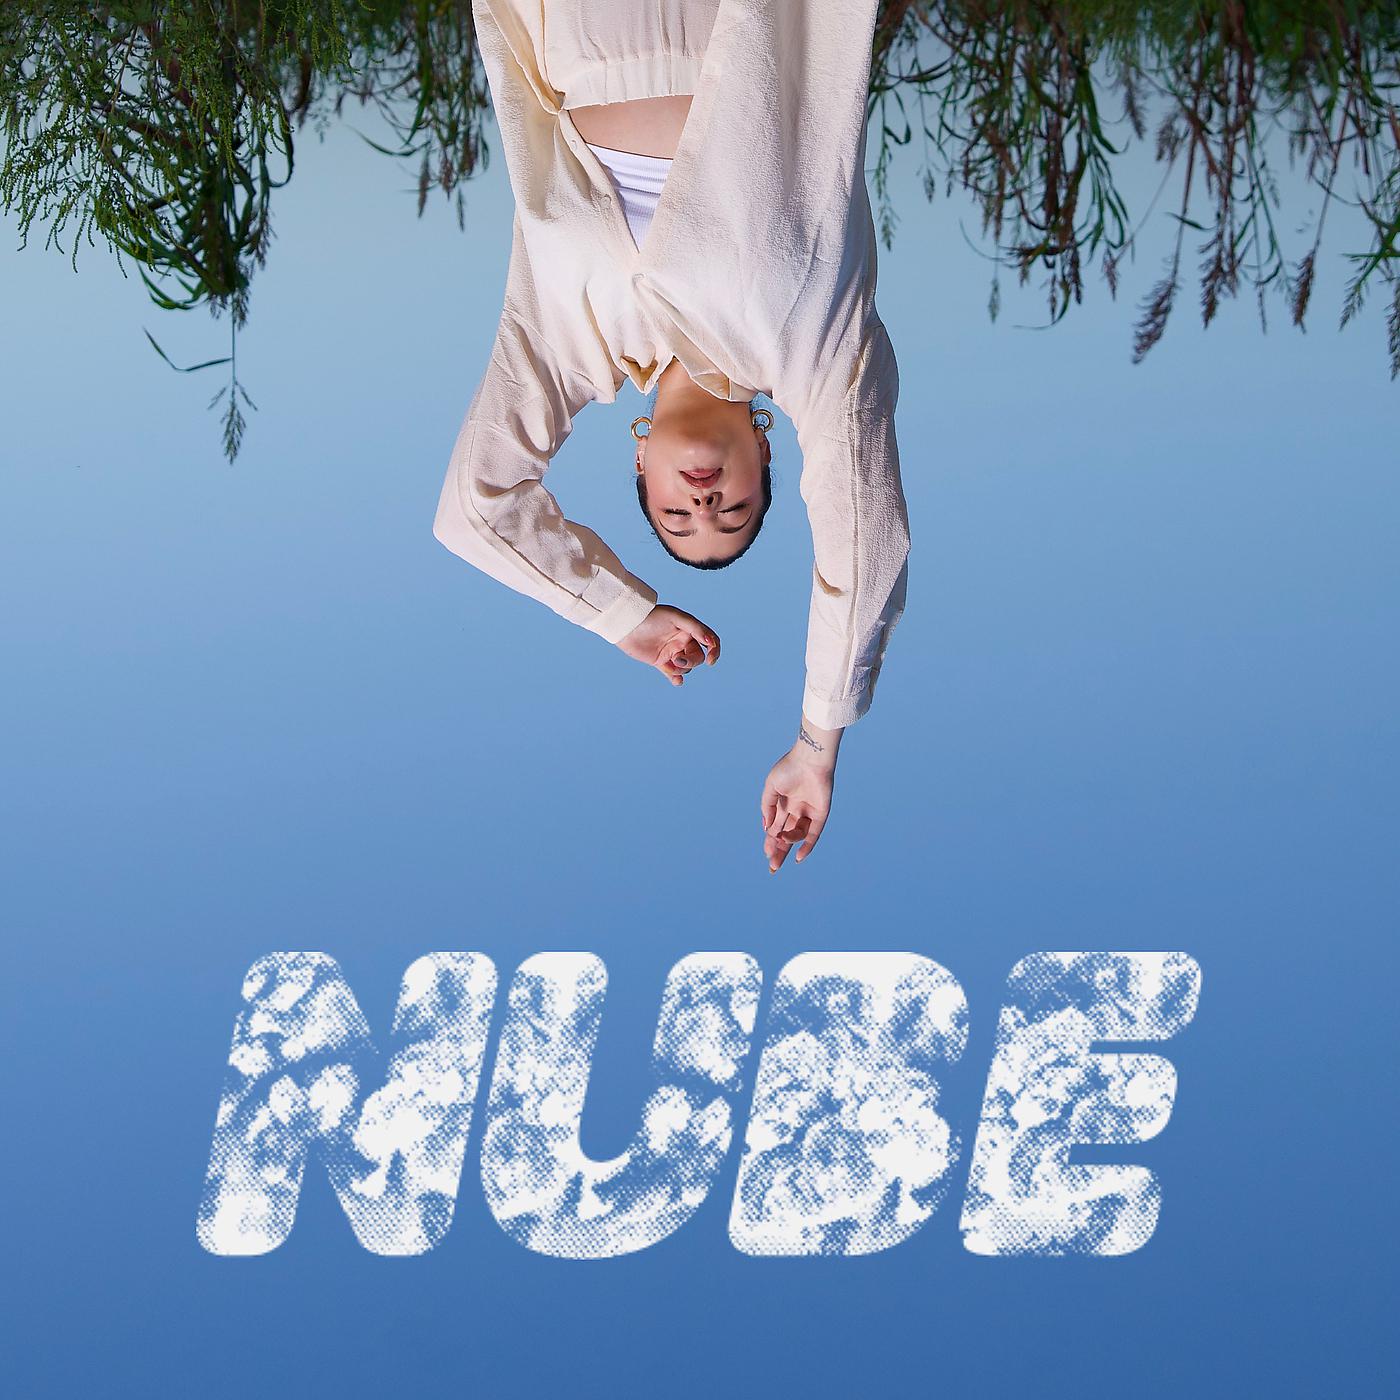 Постер альбома Nube